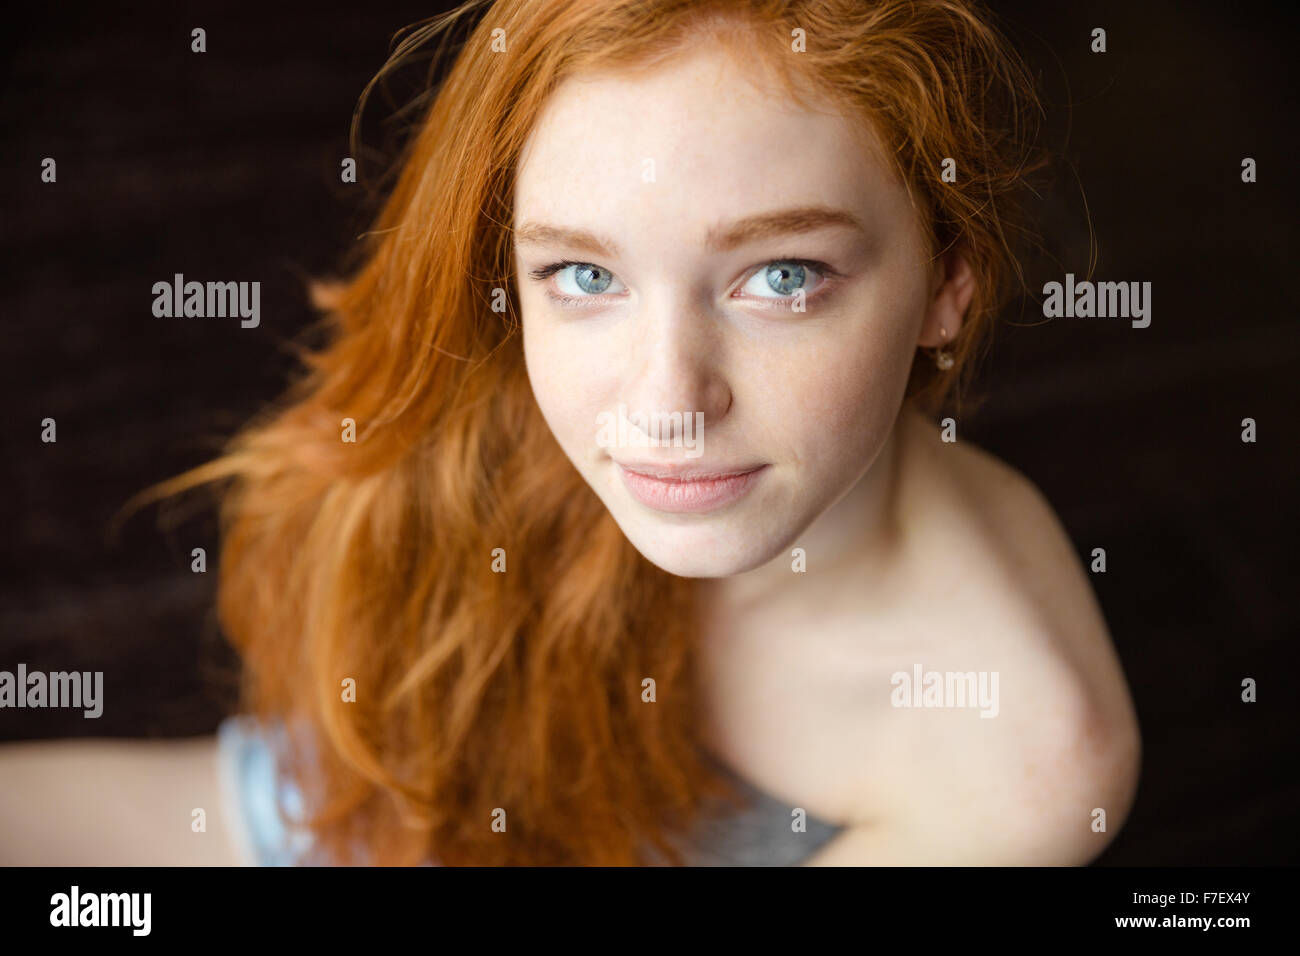 Ritratto di una bellissima femmina redhead adolescente guardando la fotocamera Foto Stock